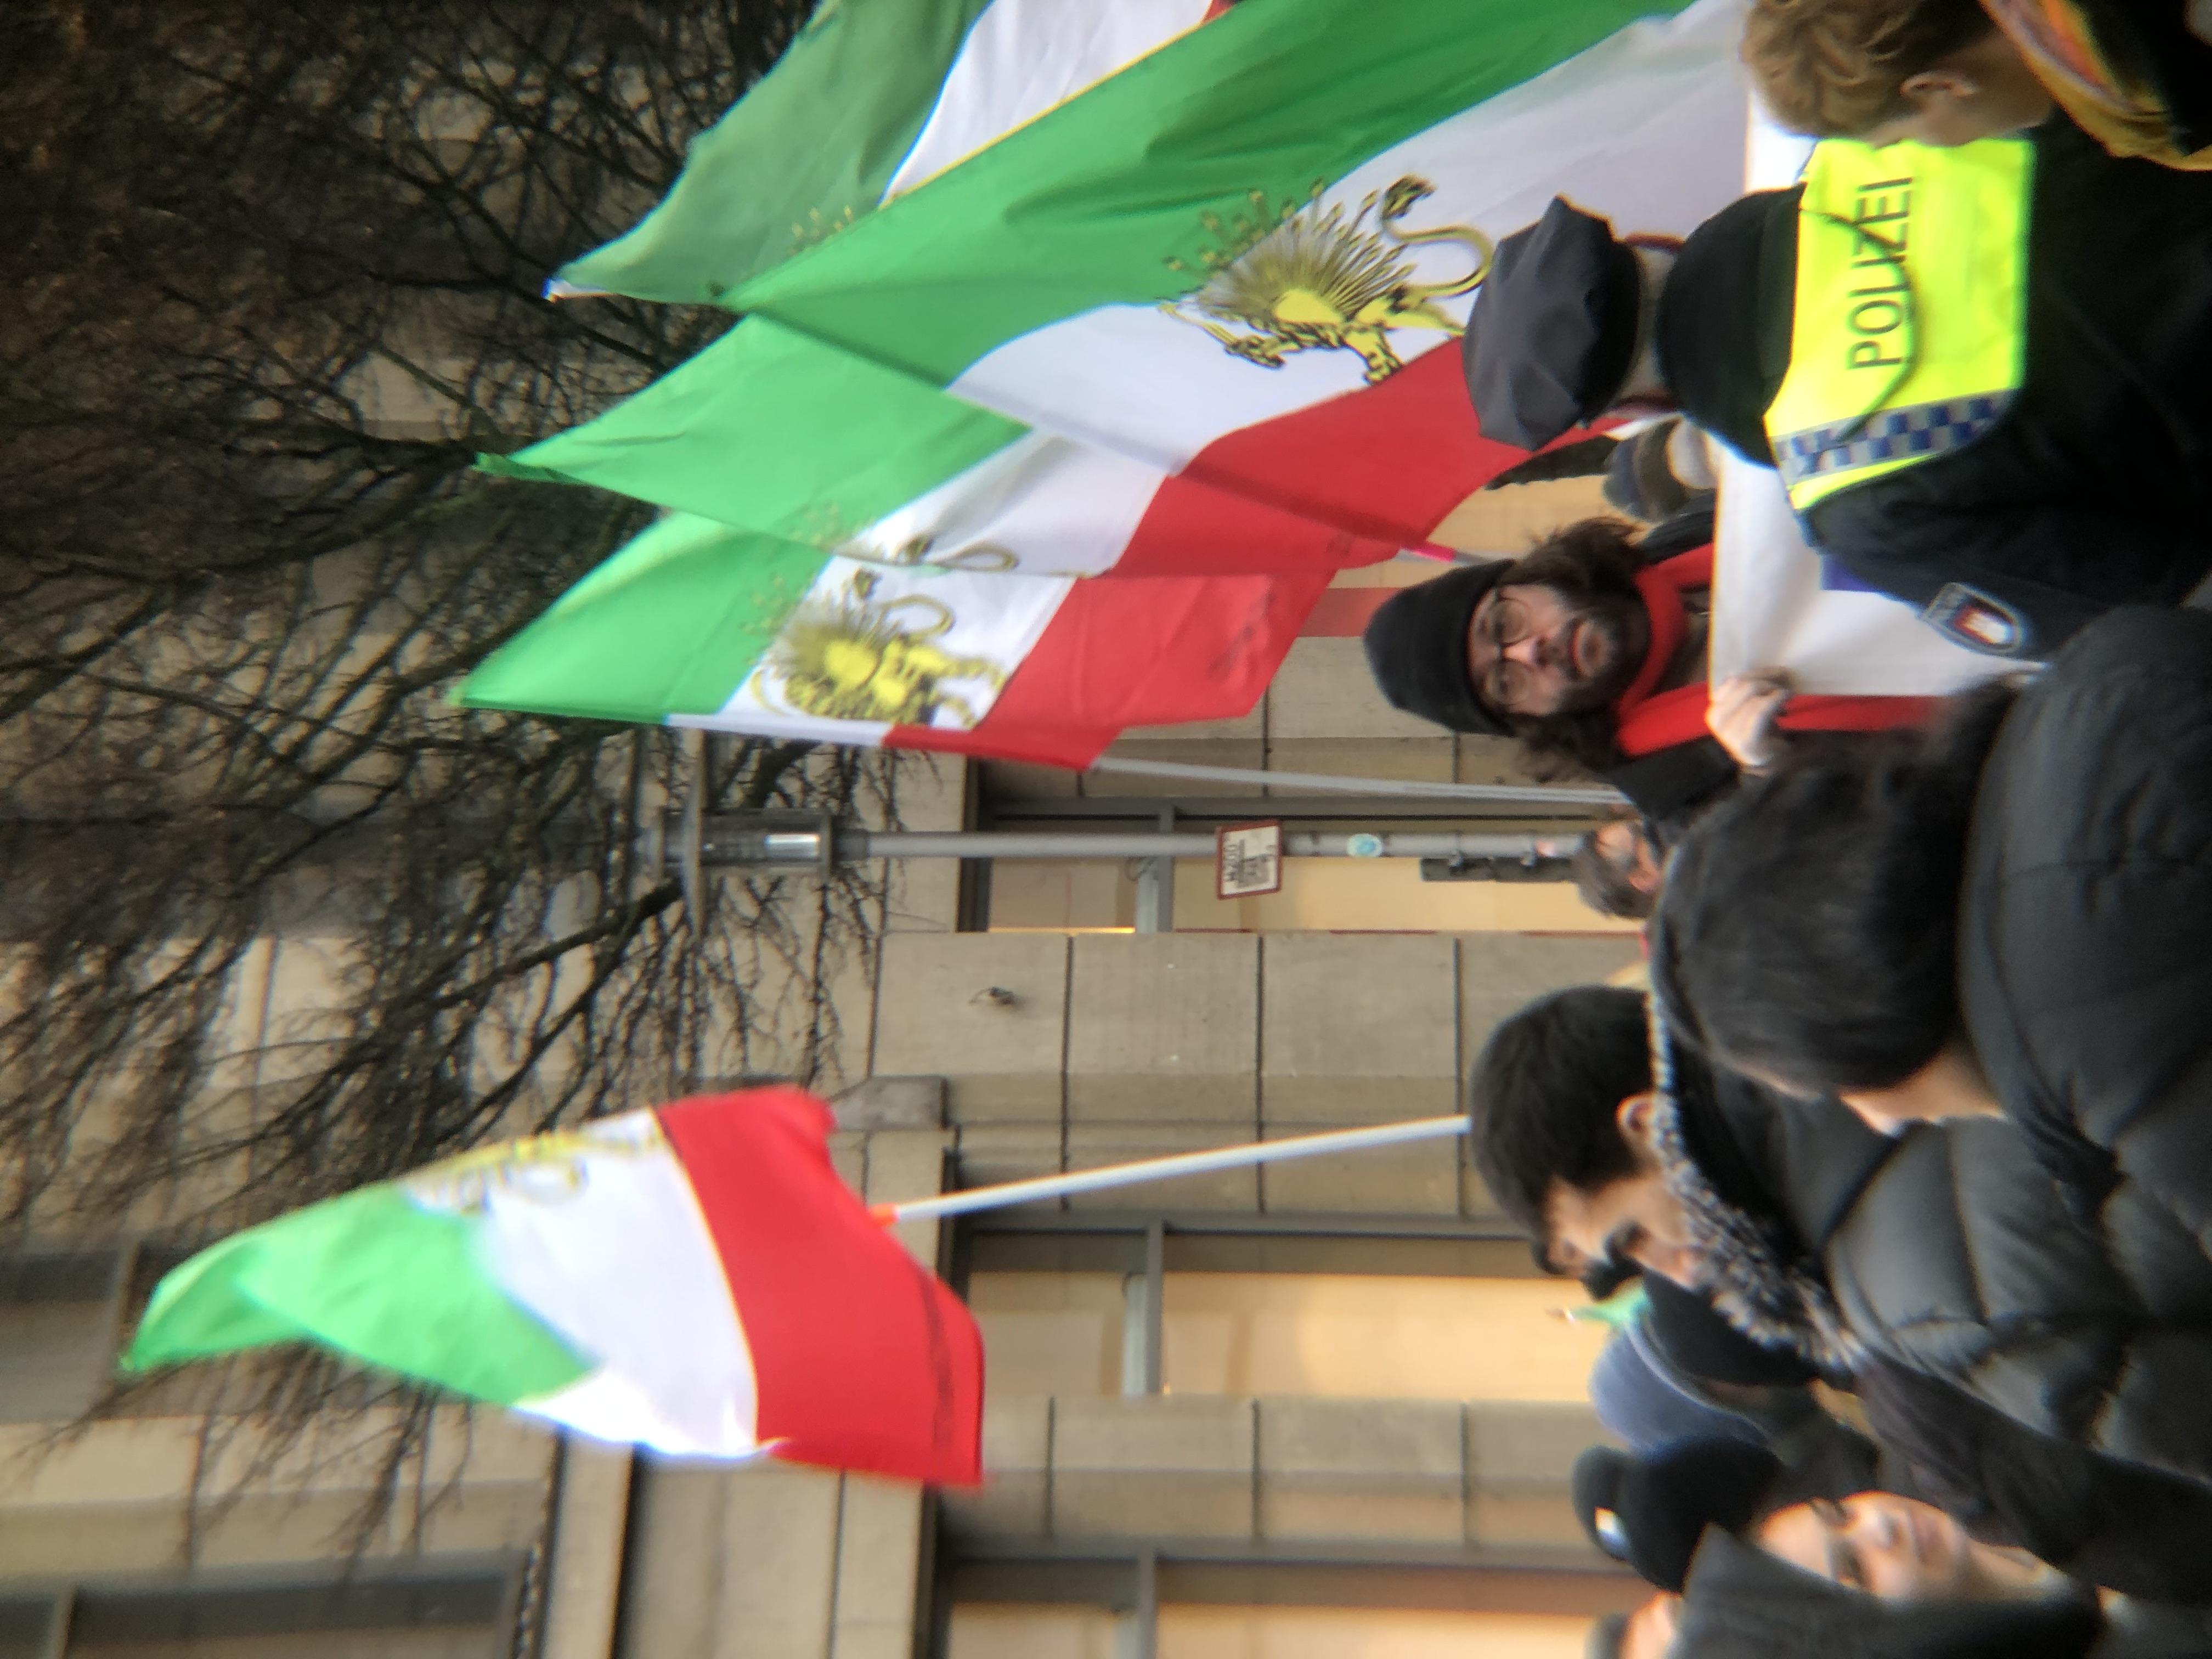 GEnte iraní protesta en Hamburgo contra la represión de la protesta social en su país. Menschen aus dem Iran proterstieren in Hamburg gegen die Unterdrückung der sozialen Proteste in ihrem Land. r 